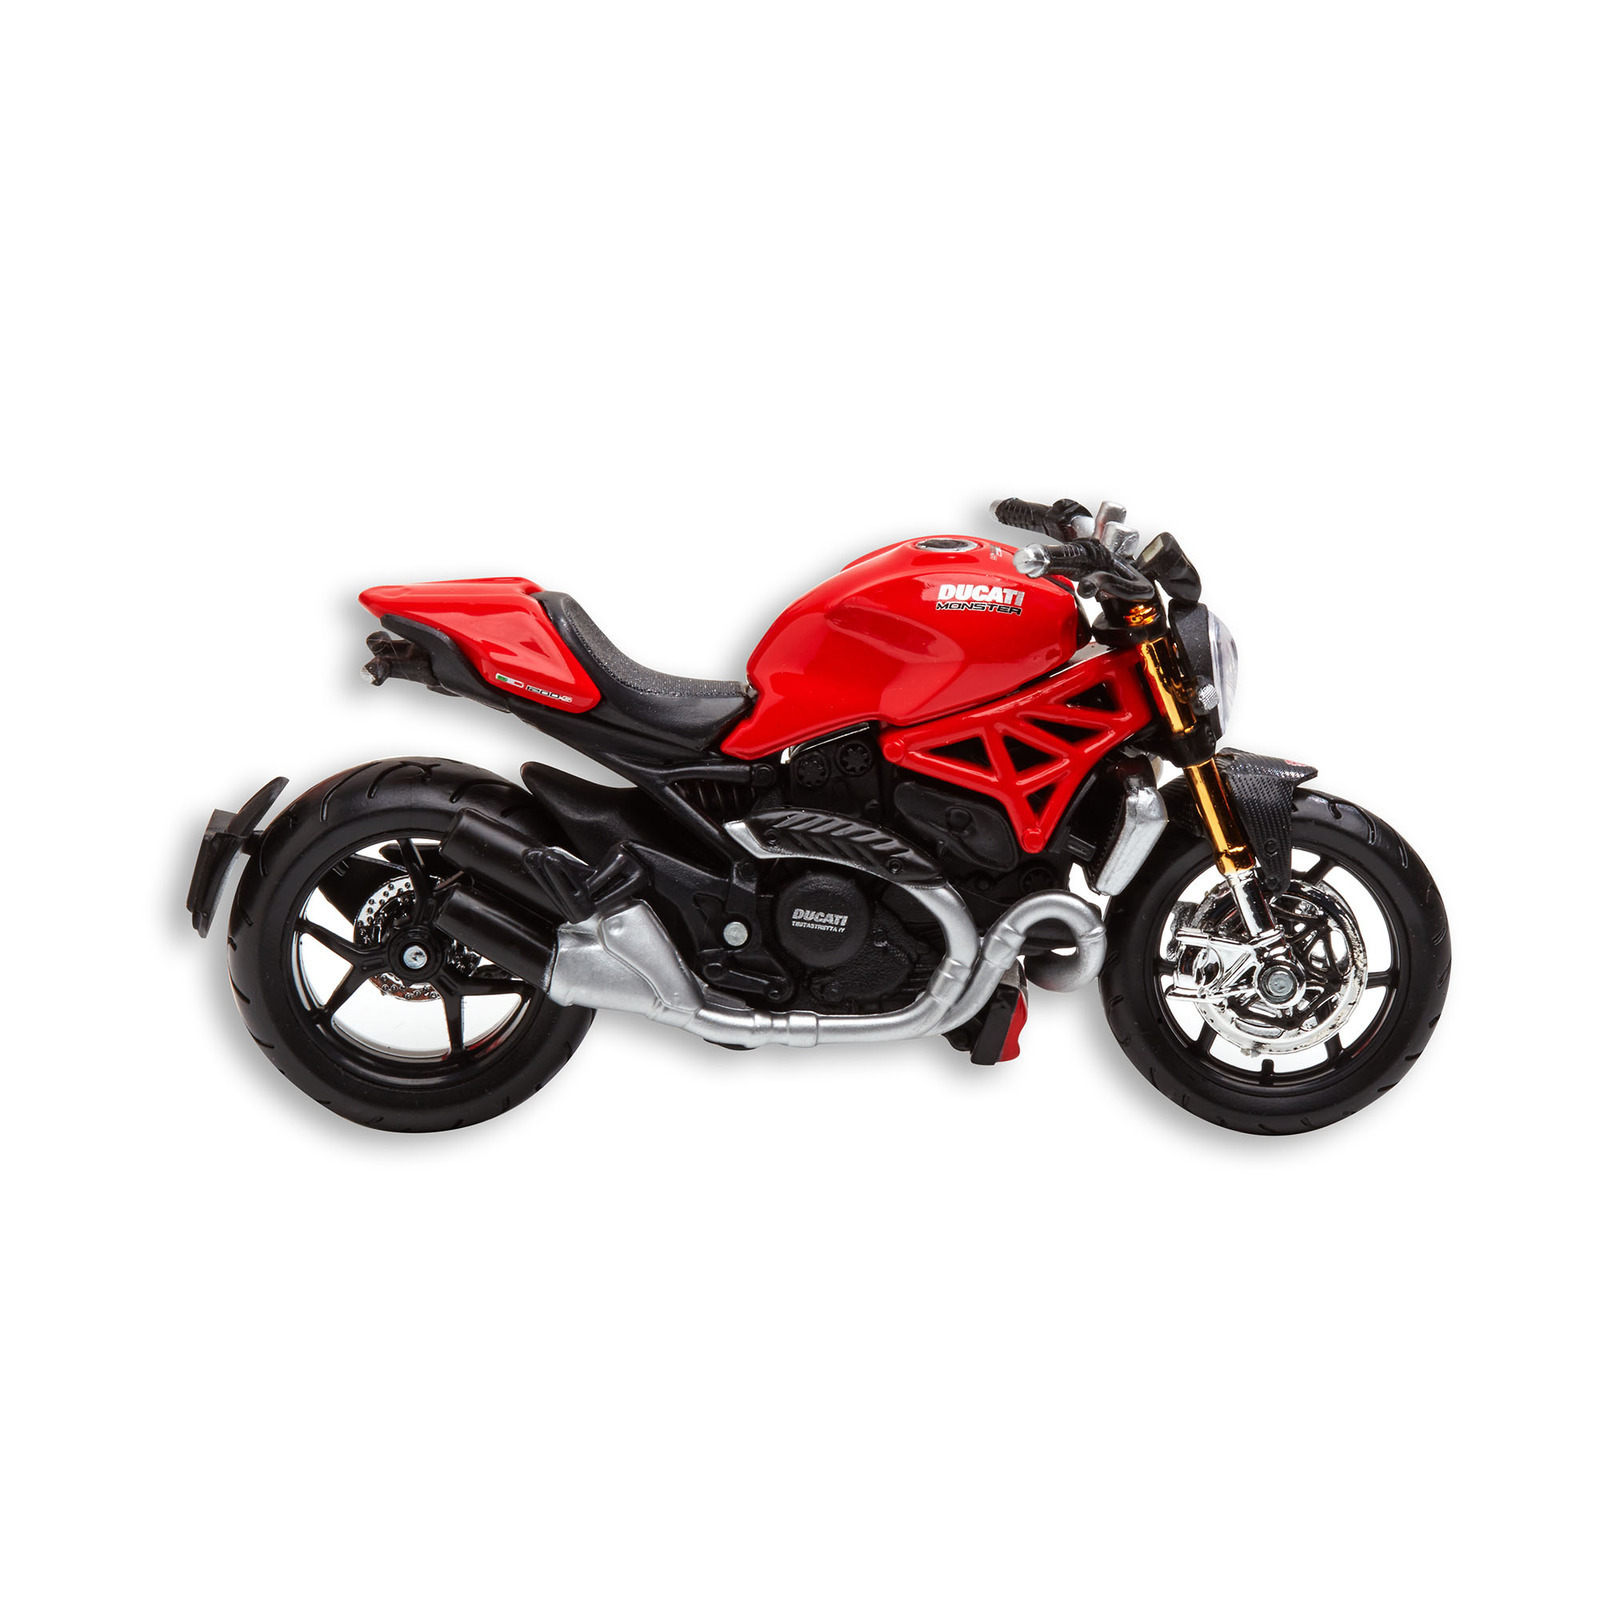 Ducati Genuine Monster 1200 Bike Model | Ducati | Ducati ...